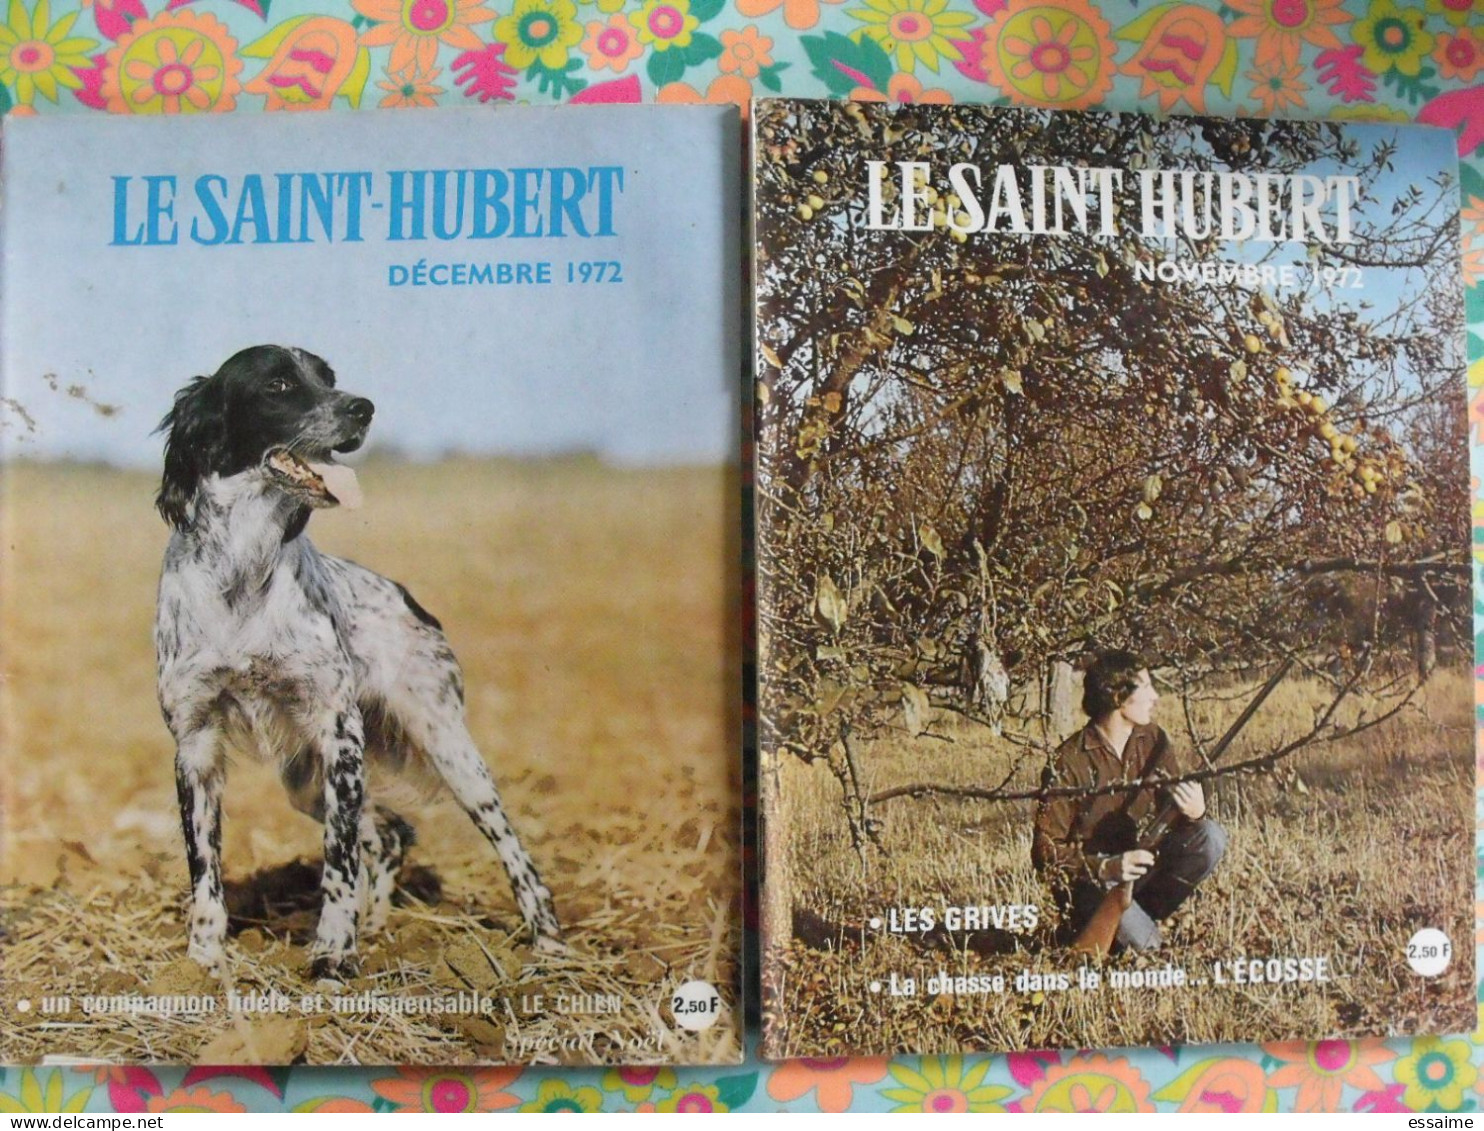 lot de 12 revues Le Saint Hubert de 1972. mensuel. chasse, pêche. année complète.